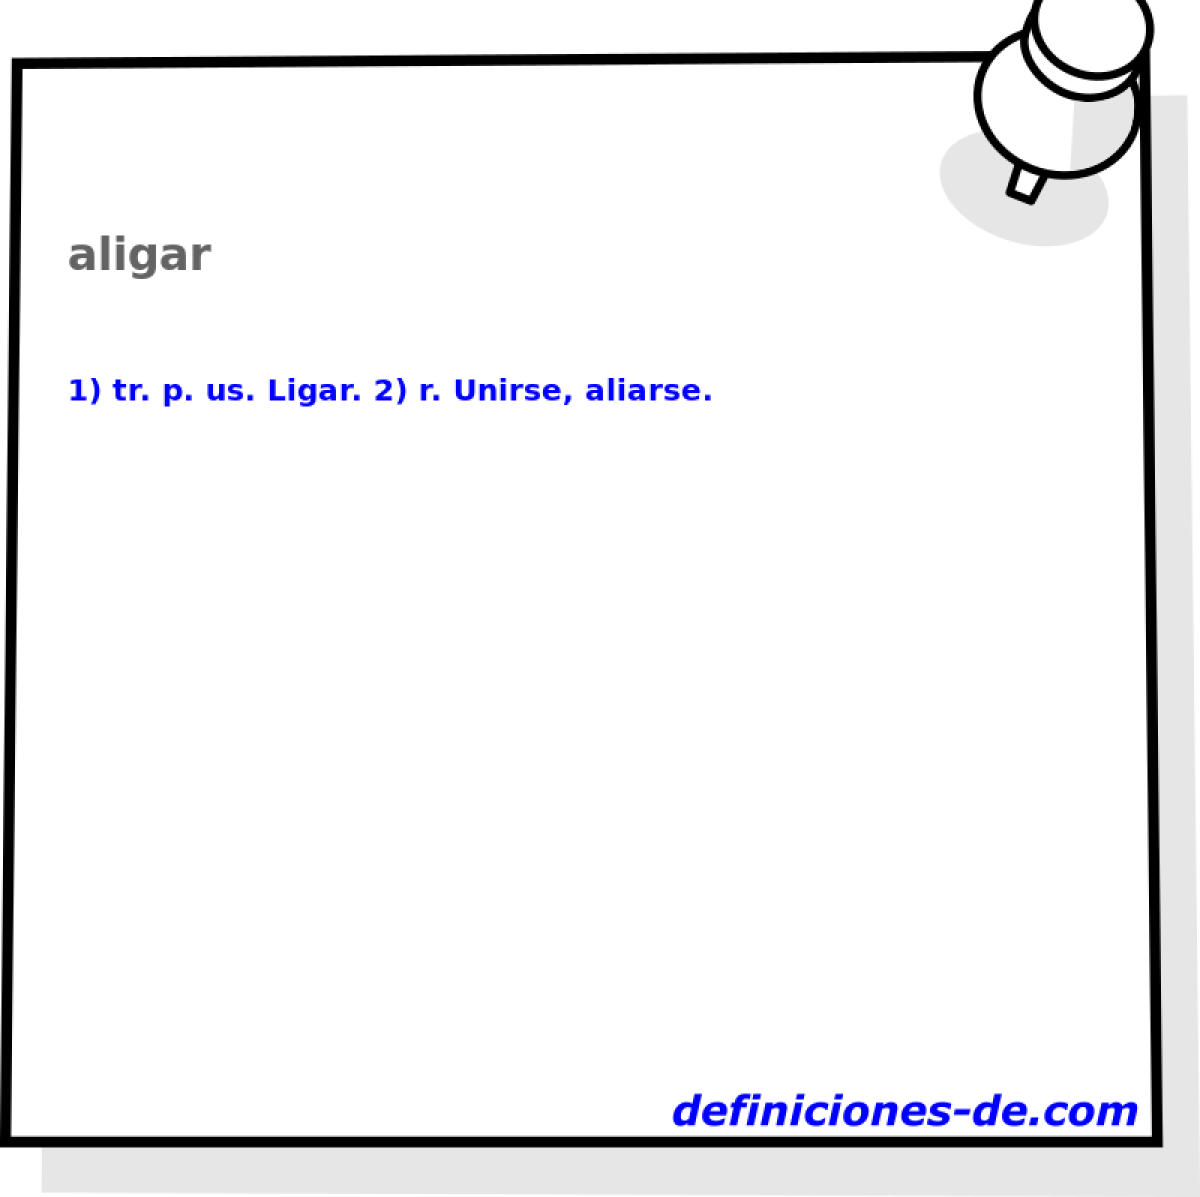 aligar 